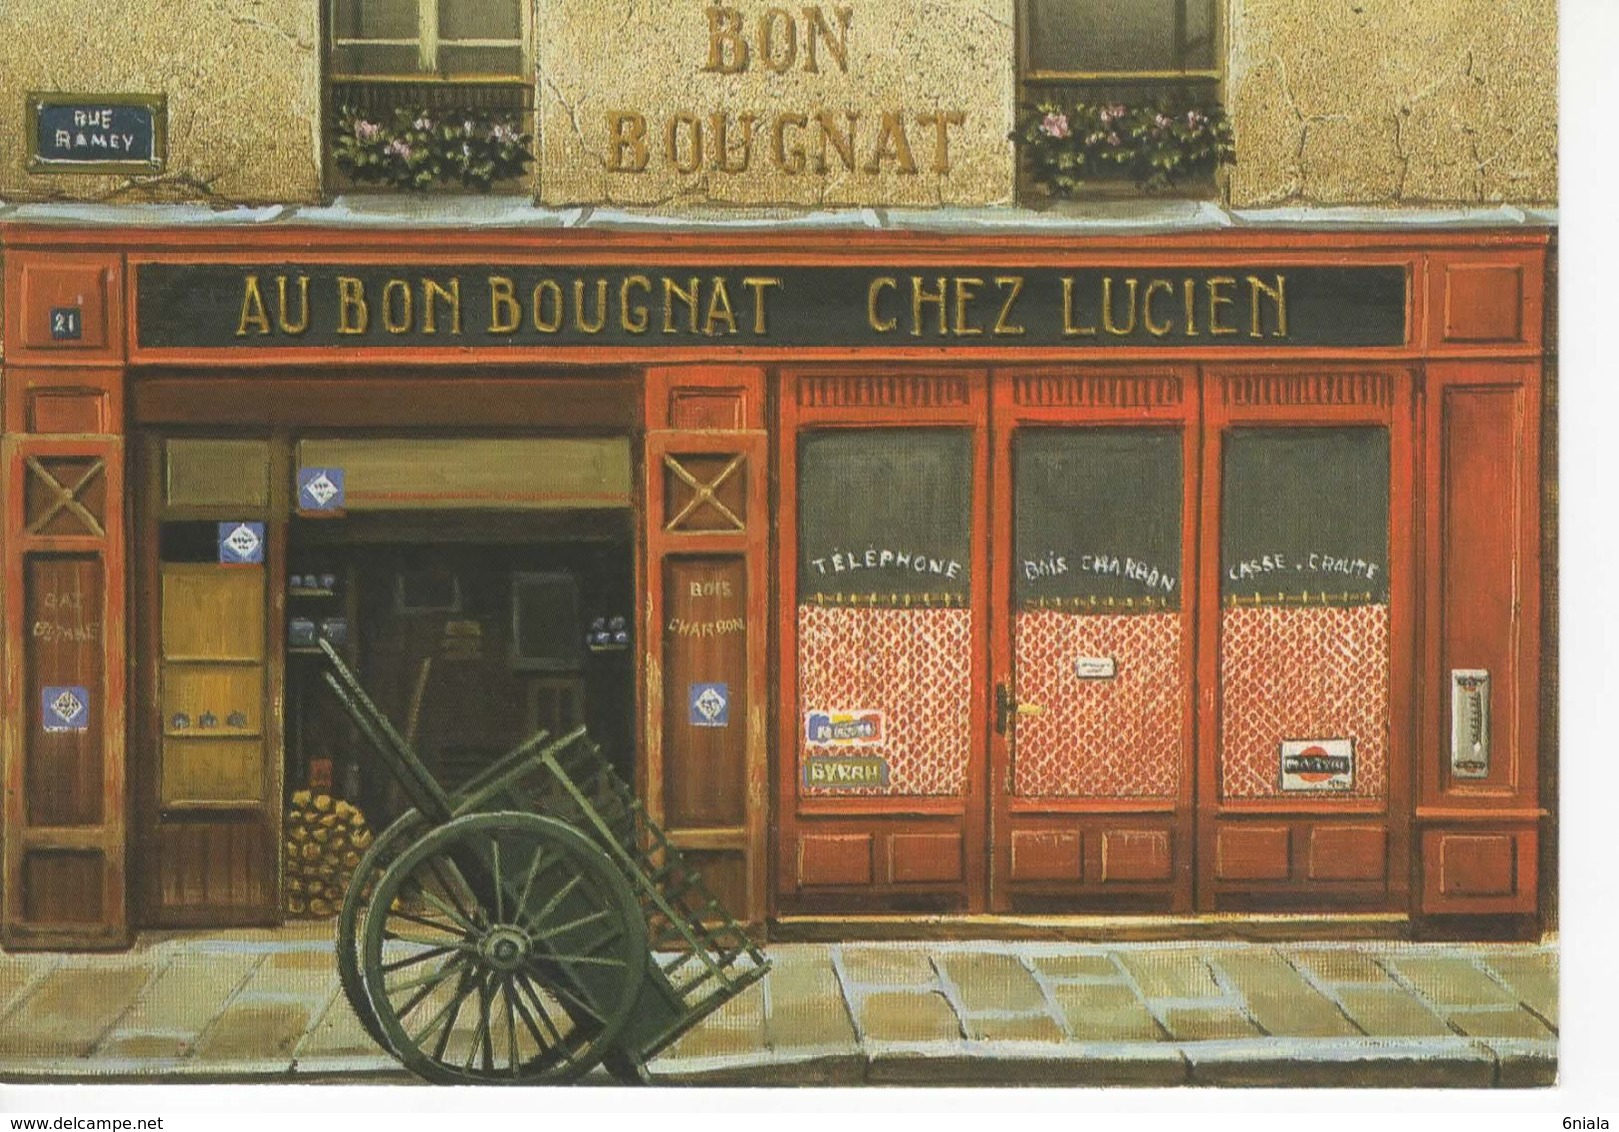 1571   VITRINE AU BON BOUGNAT CHEZ LUCIEN    Illustrateur ANDRÉ RENOUX    RF 1  Charrette - Shops